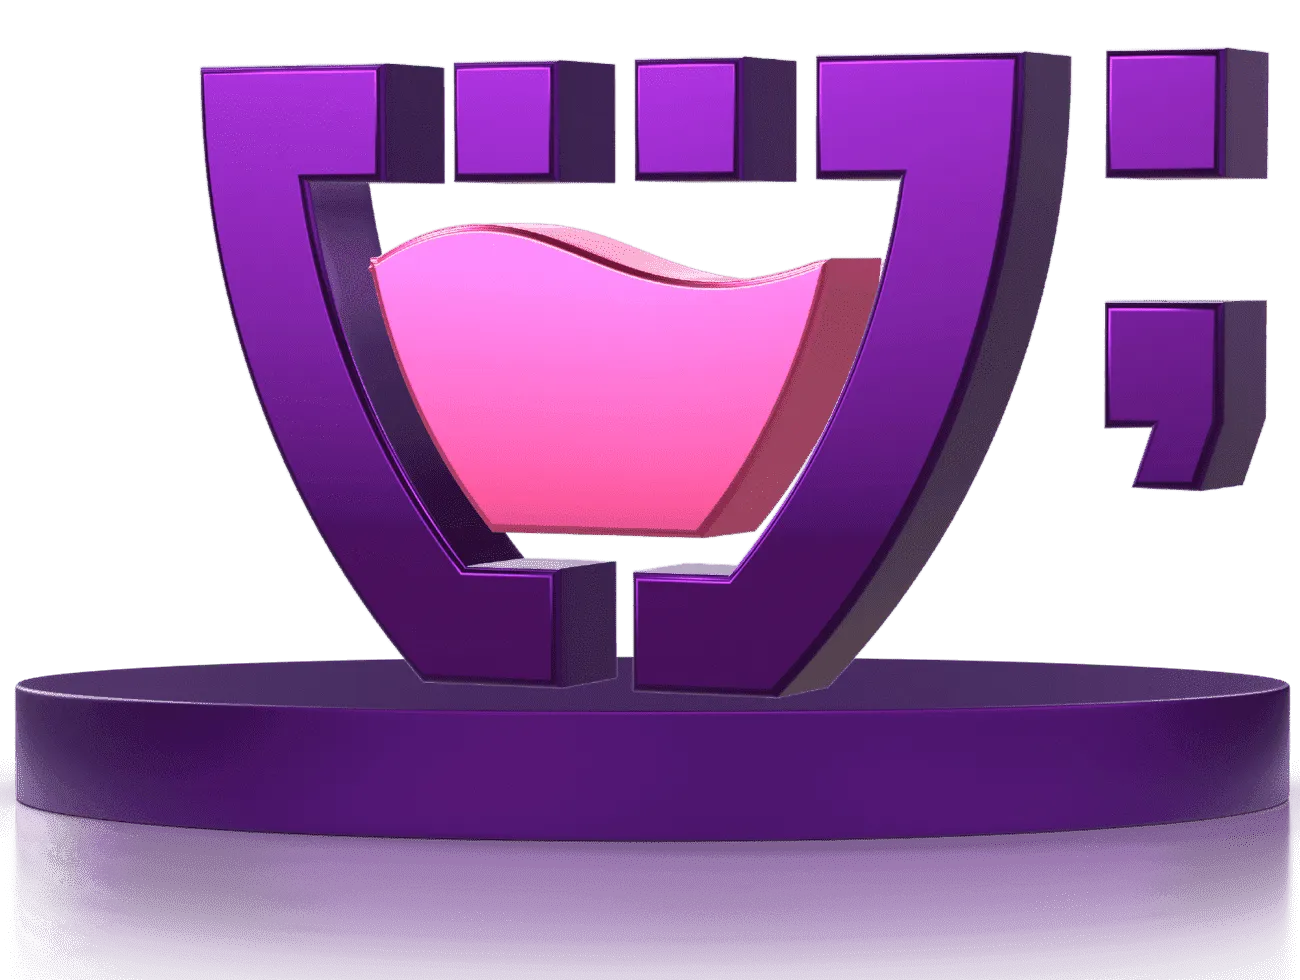 Logotipo da Cupcode em um pódio roxo.